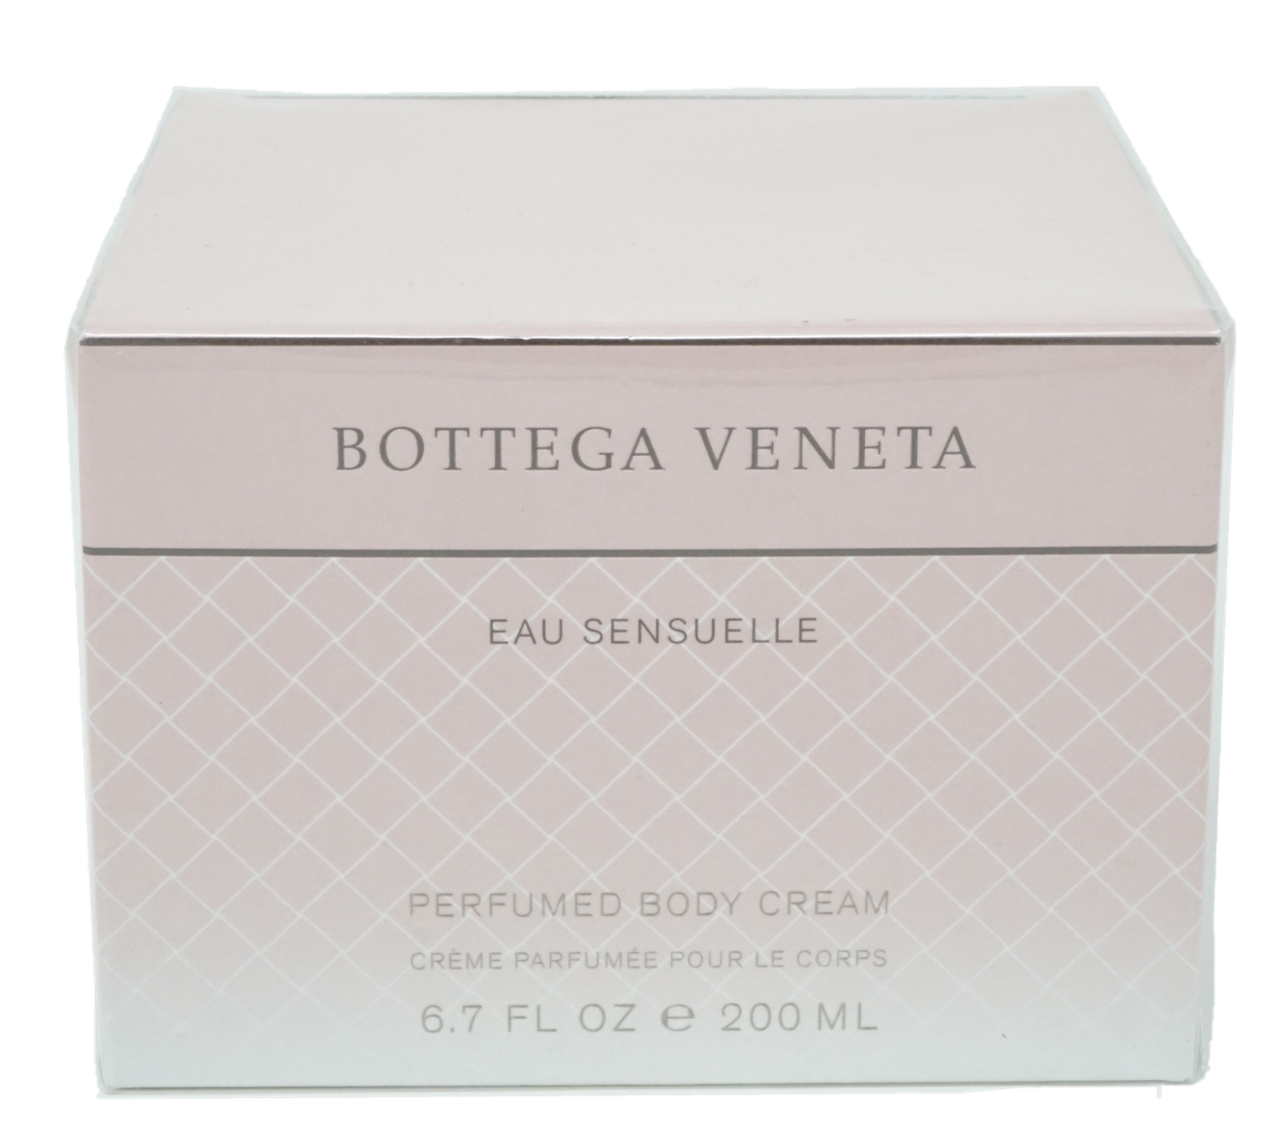 Bottega Veneta Eau Sensuelle Perfumed Body Cream 200 ml